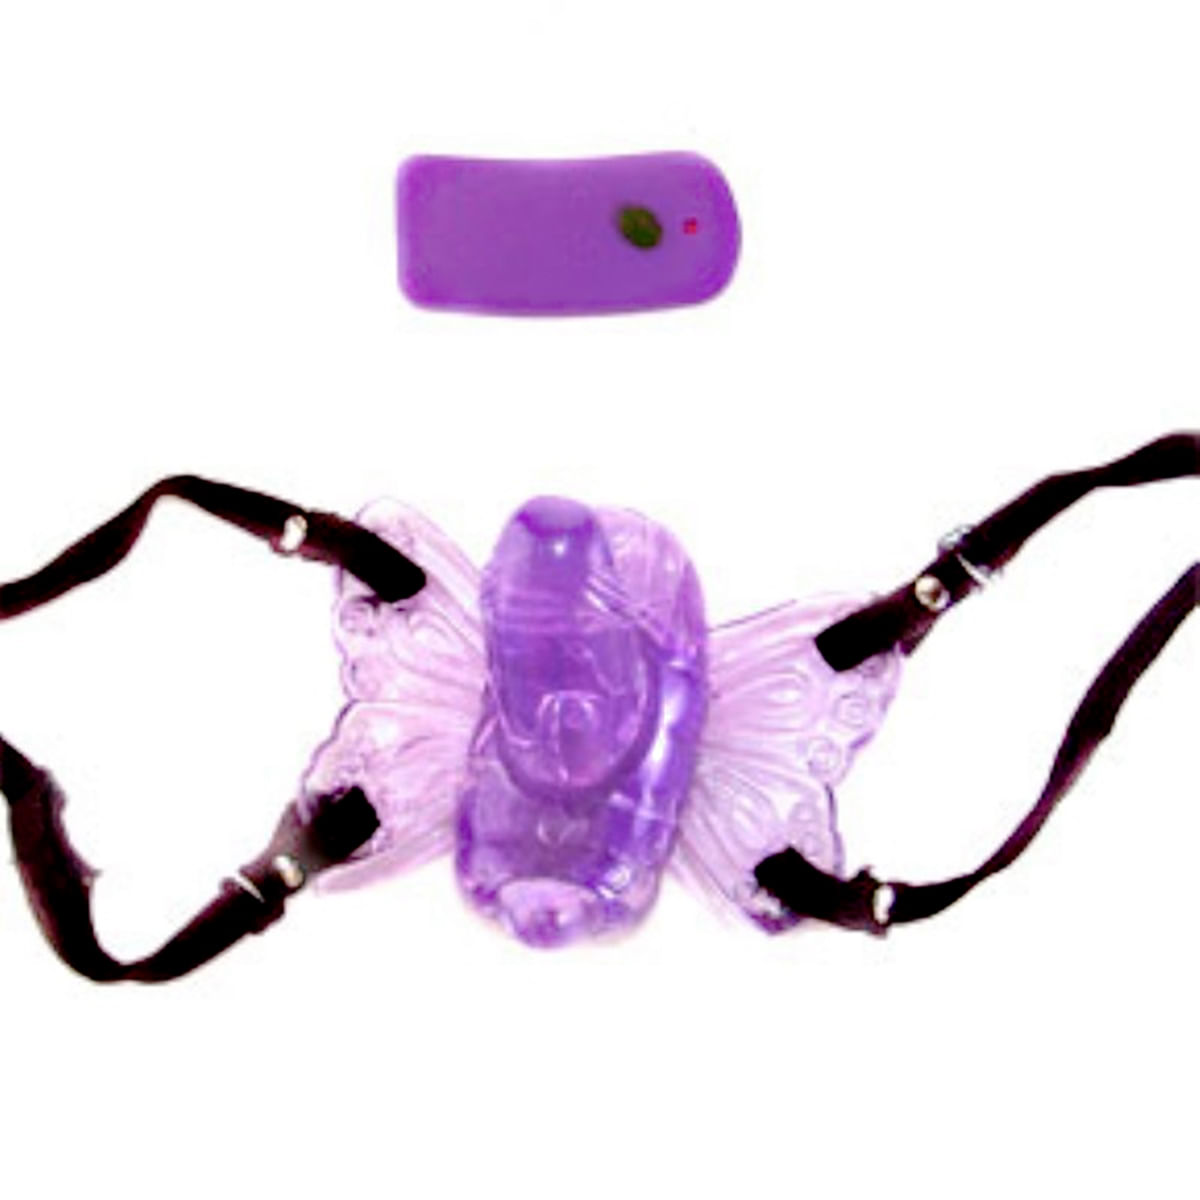 Estimulador Butterfly Possession Wireless em Jelly com Controle Remoto